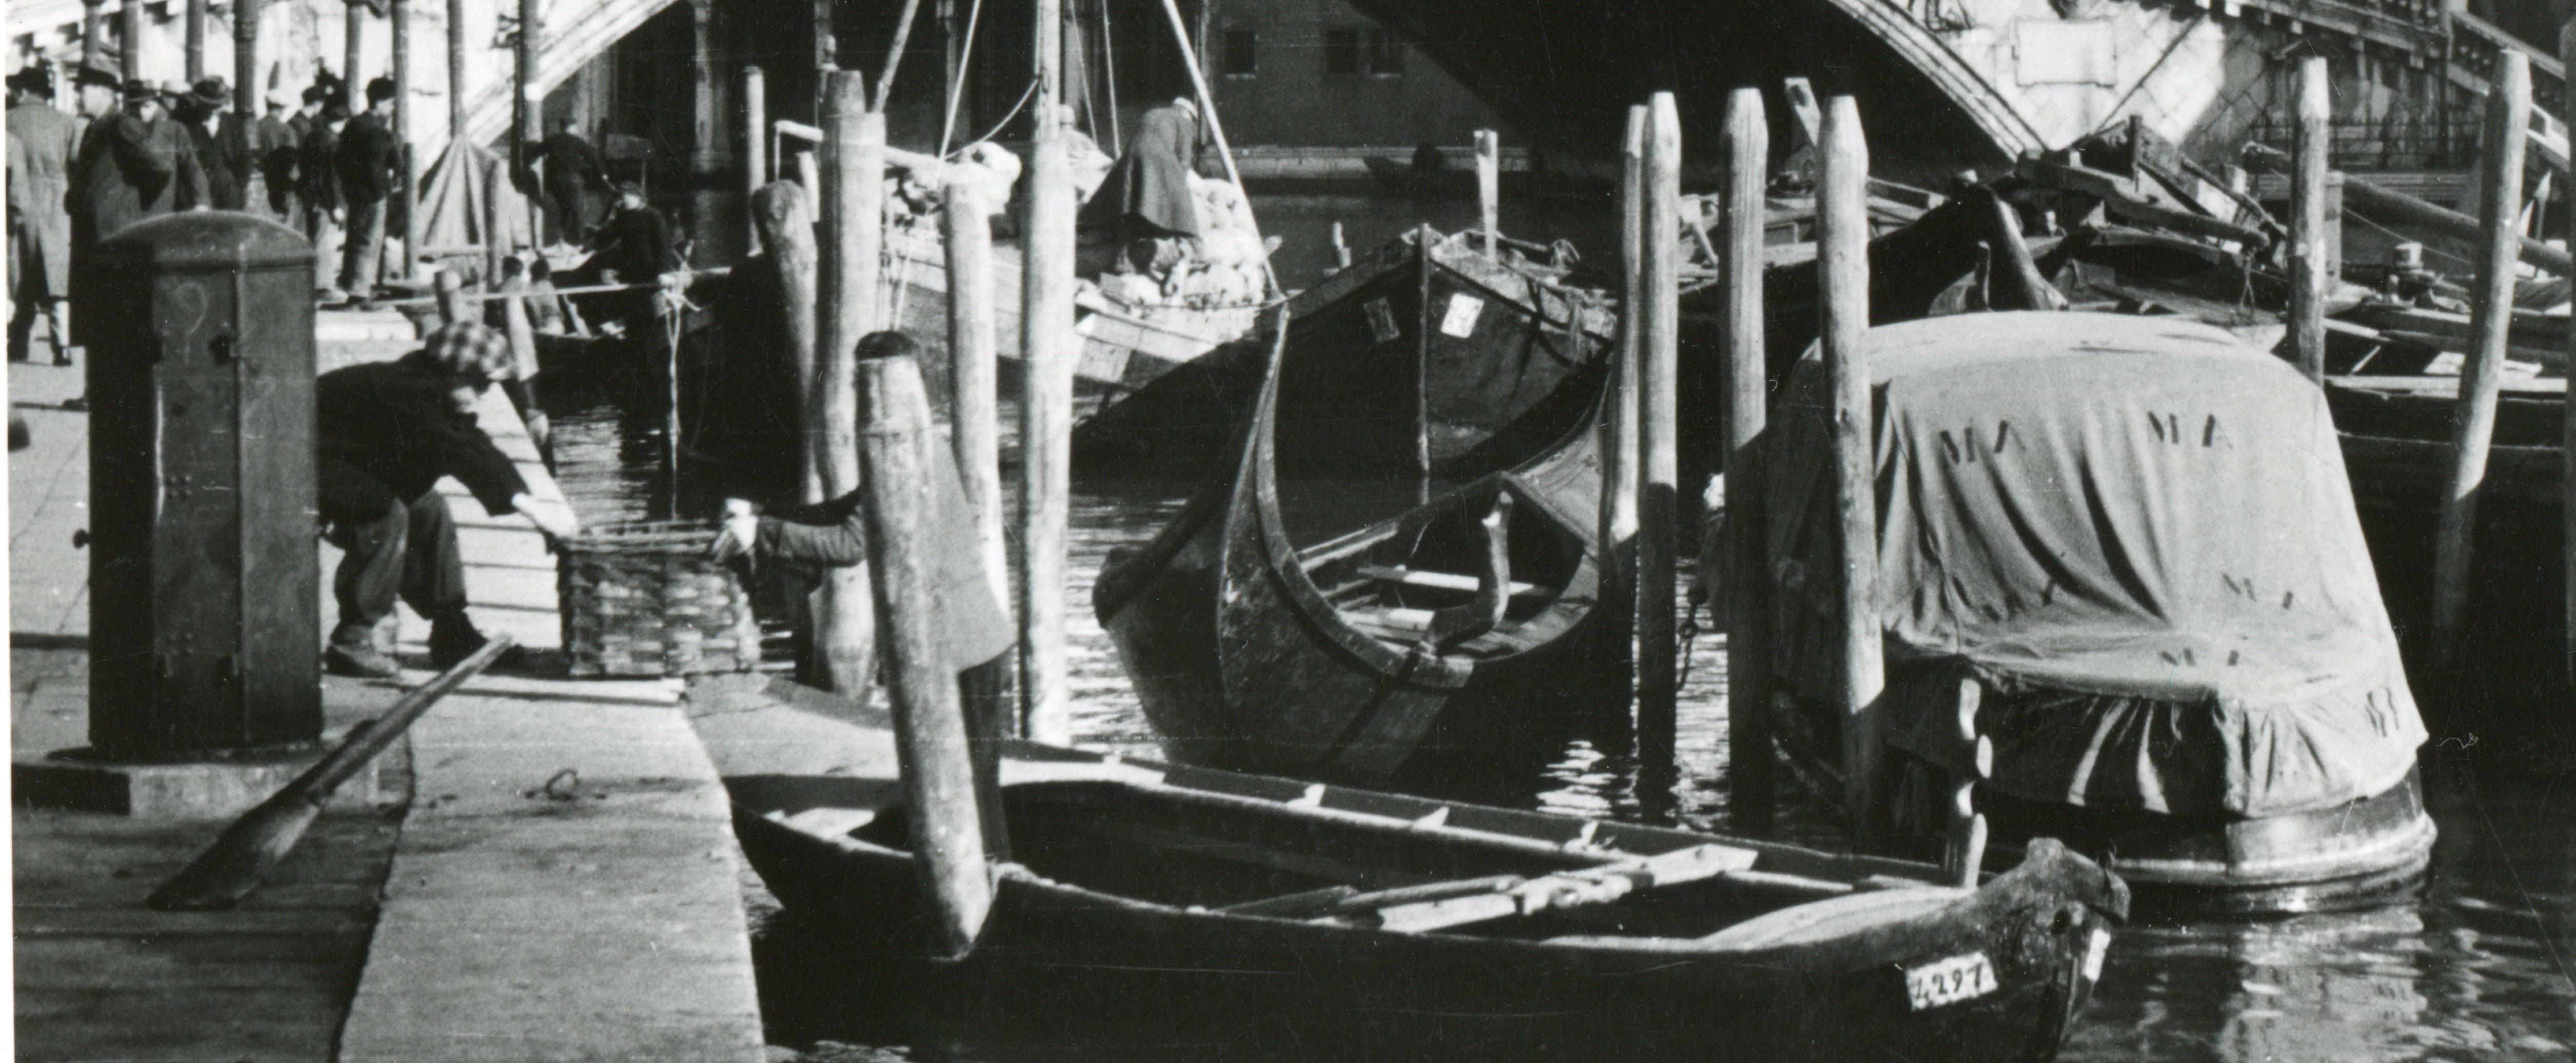 Venice - Rialto Bridge 1954 - Modern Photograph by Erich Andres